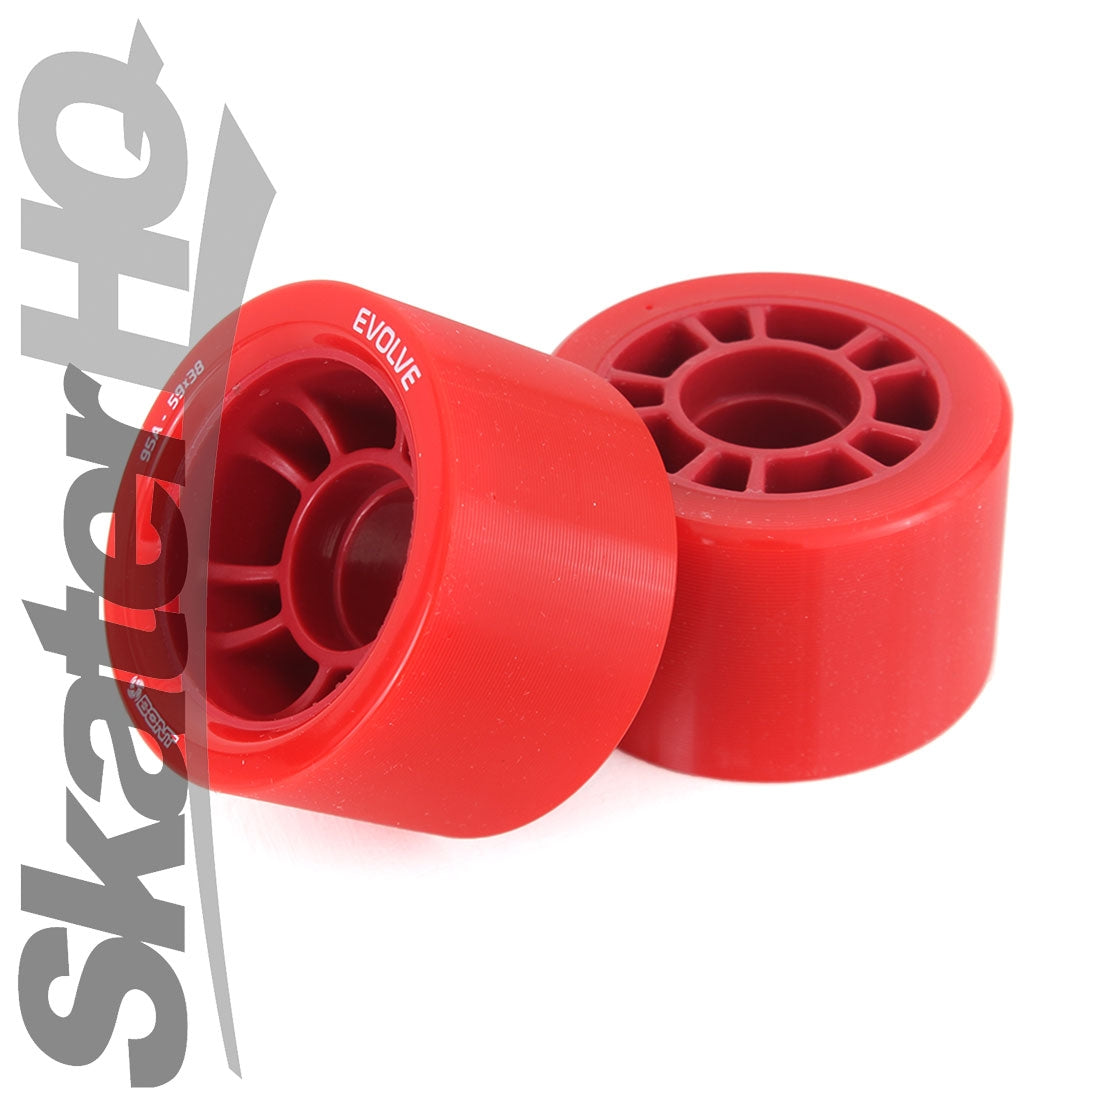 Bont Evolve Derby 59x38mm 95a 4pk - Red Roller Skate Wheels